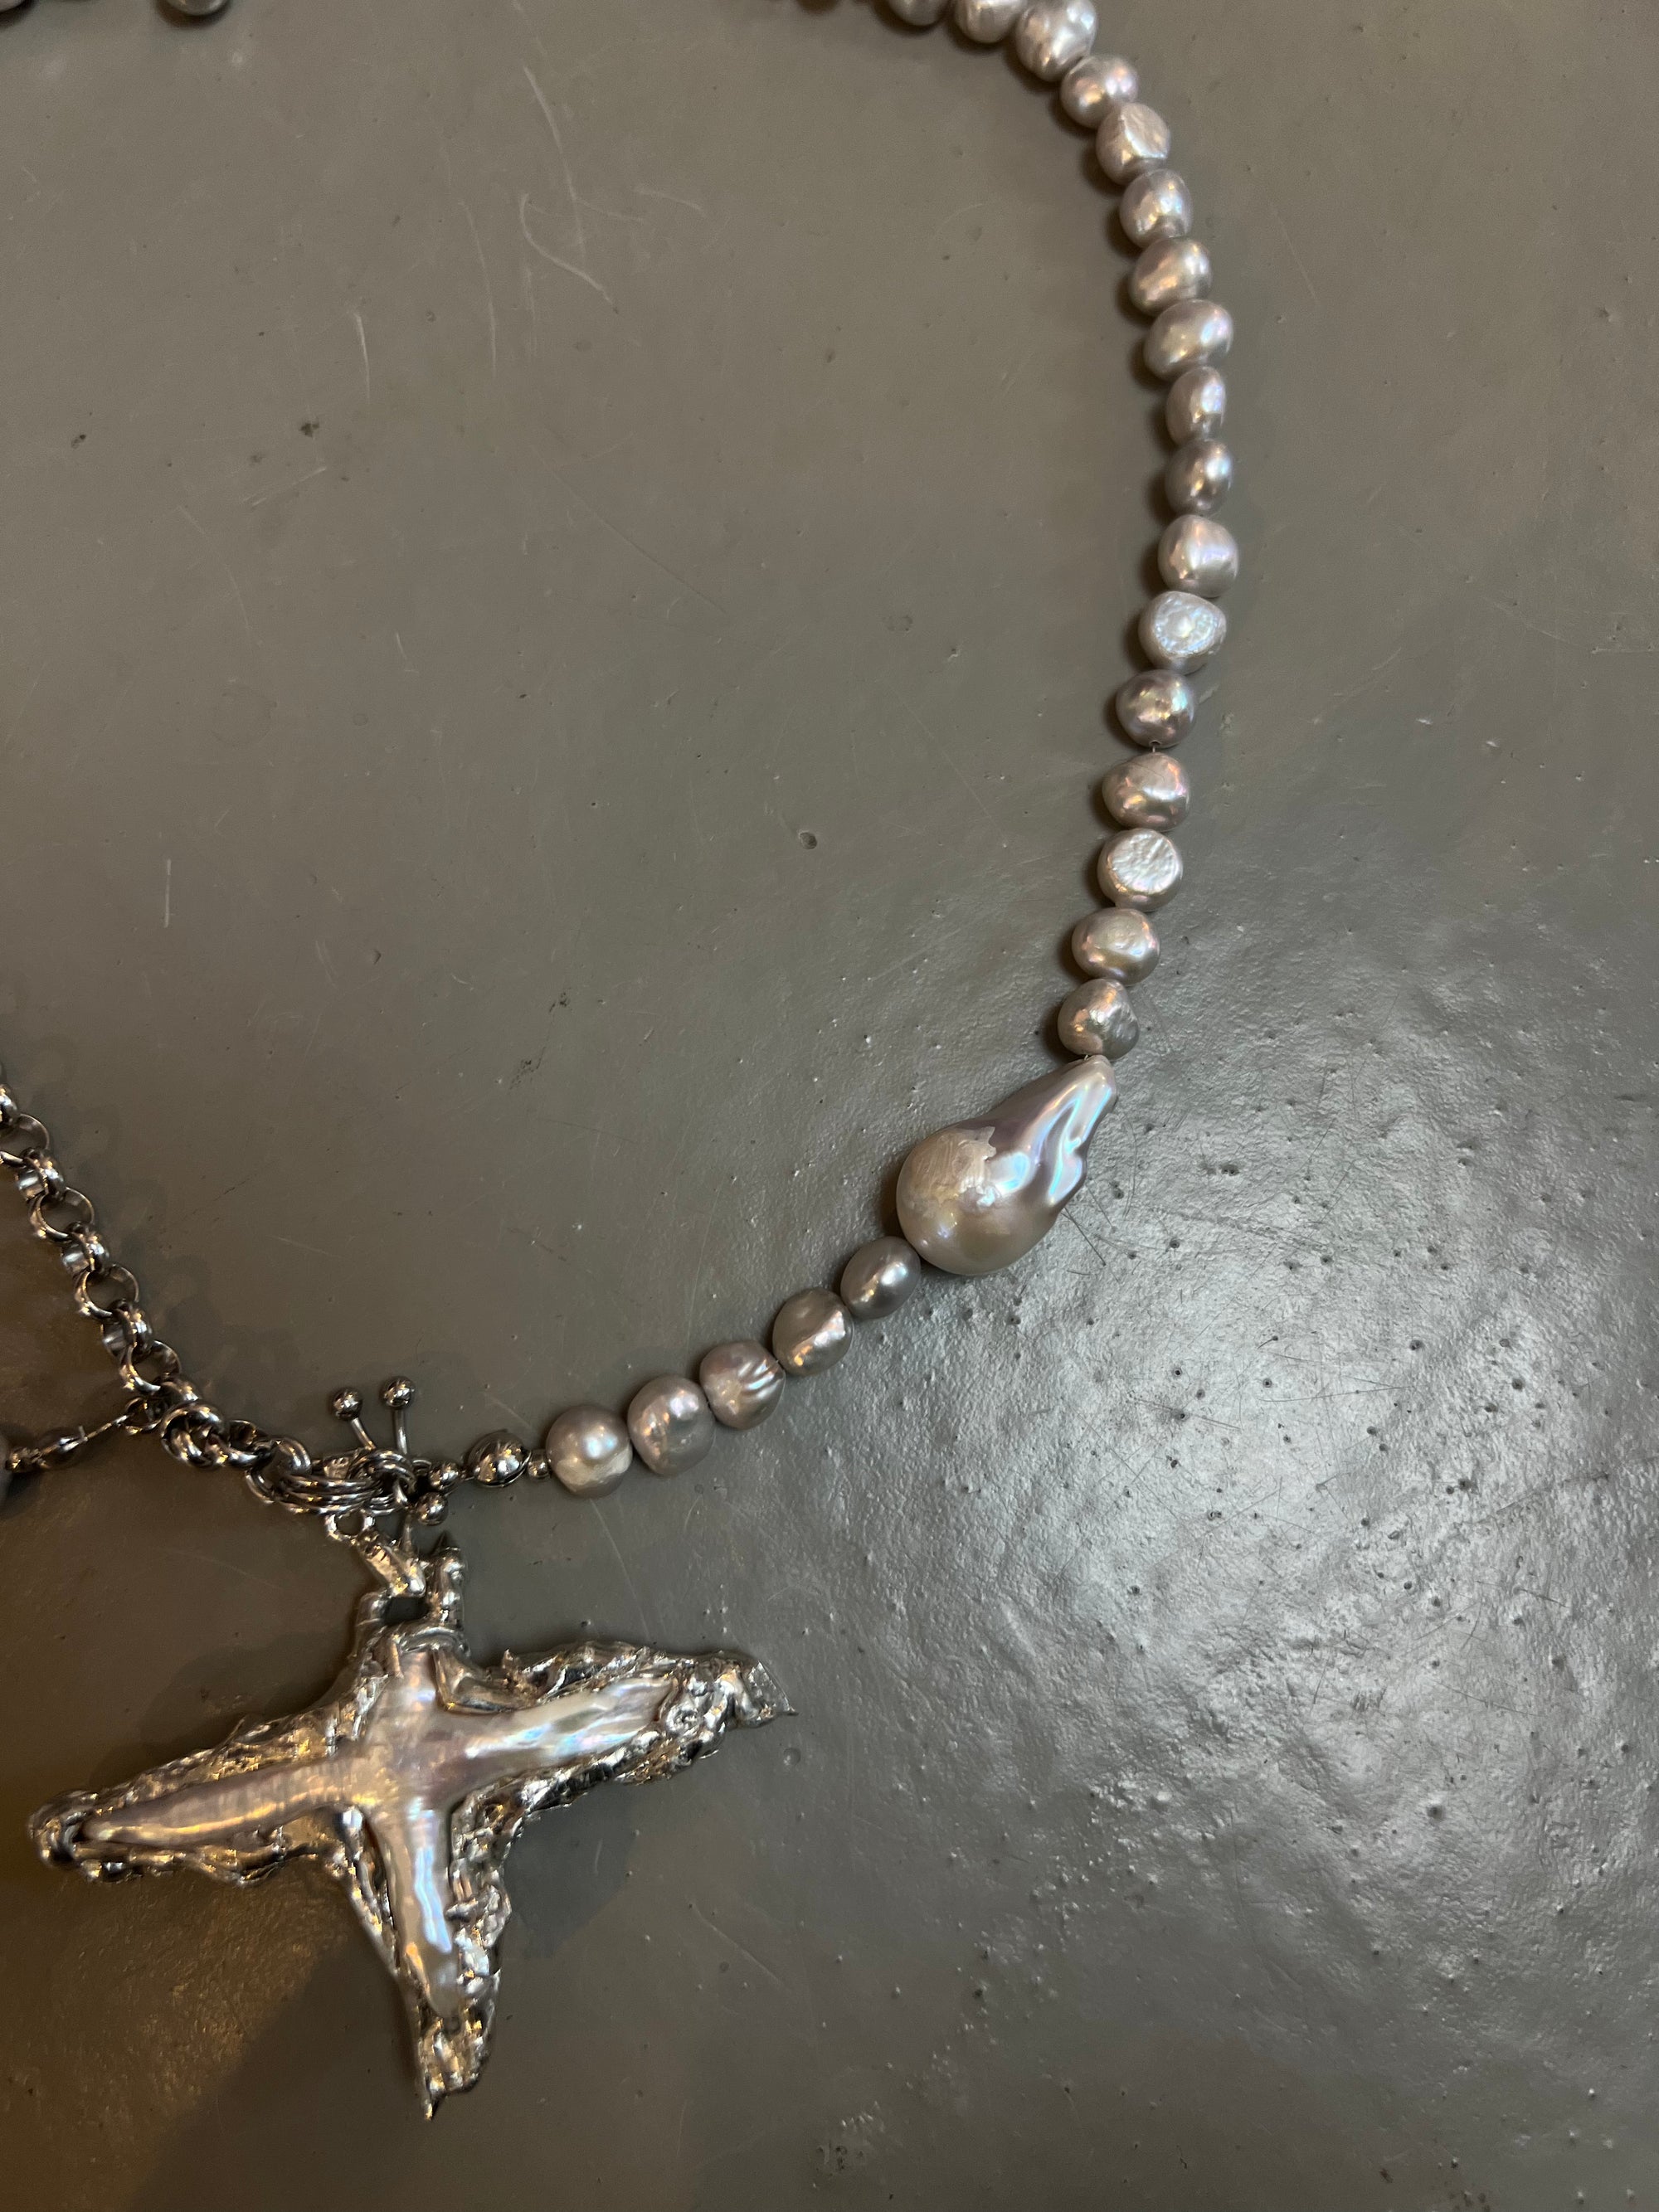 Detailliertes Produktbild von Xullery Cross Grey Pearl Necklace auf grauem Boden.